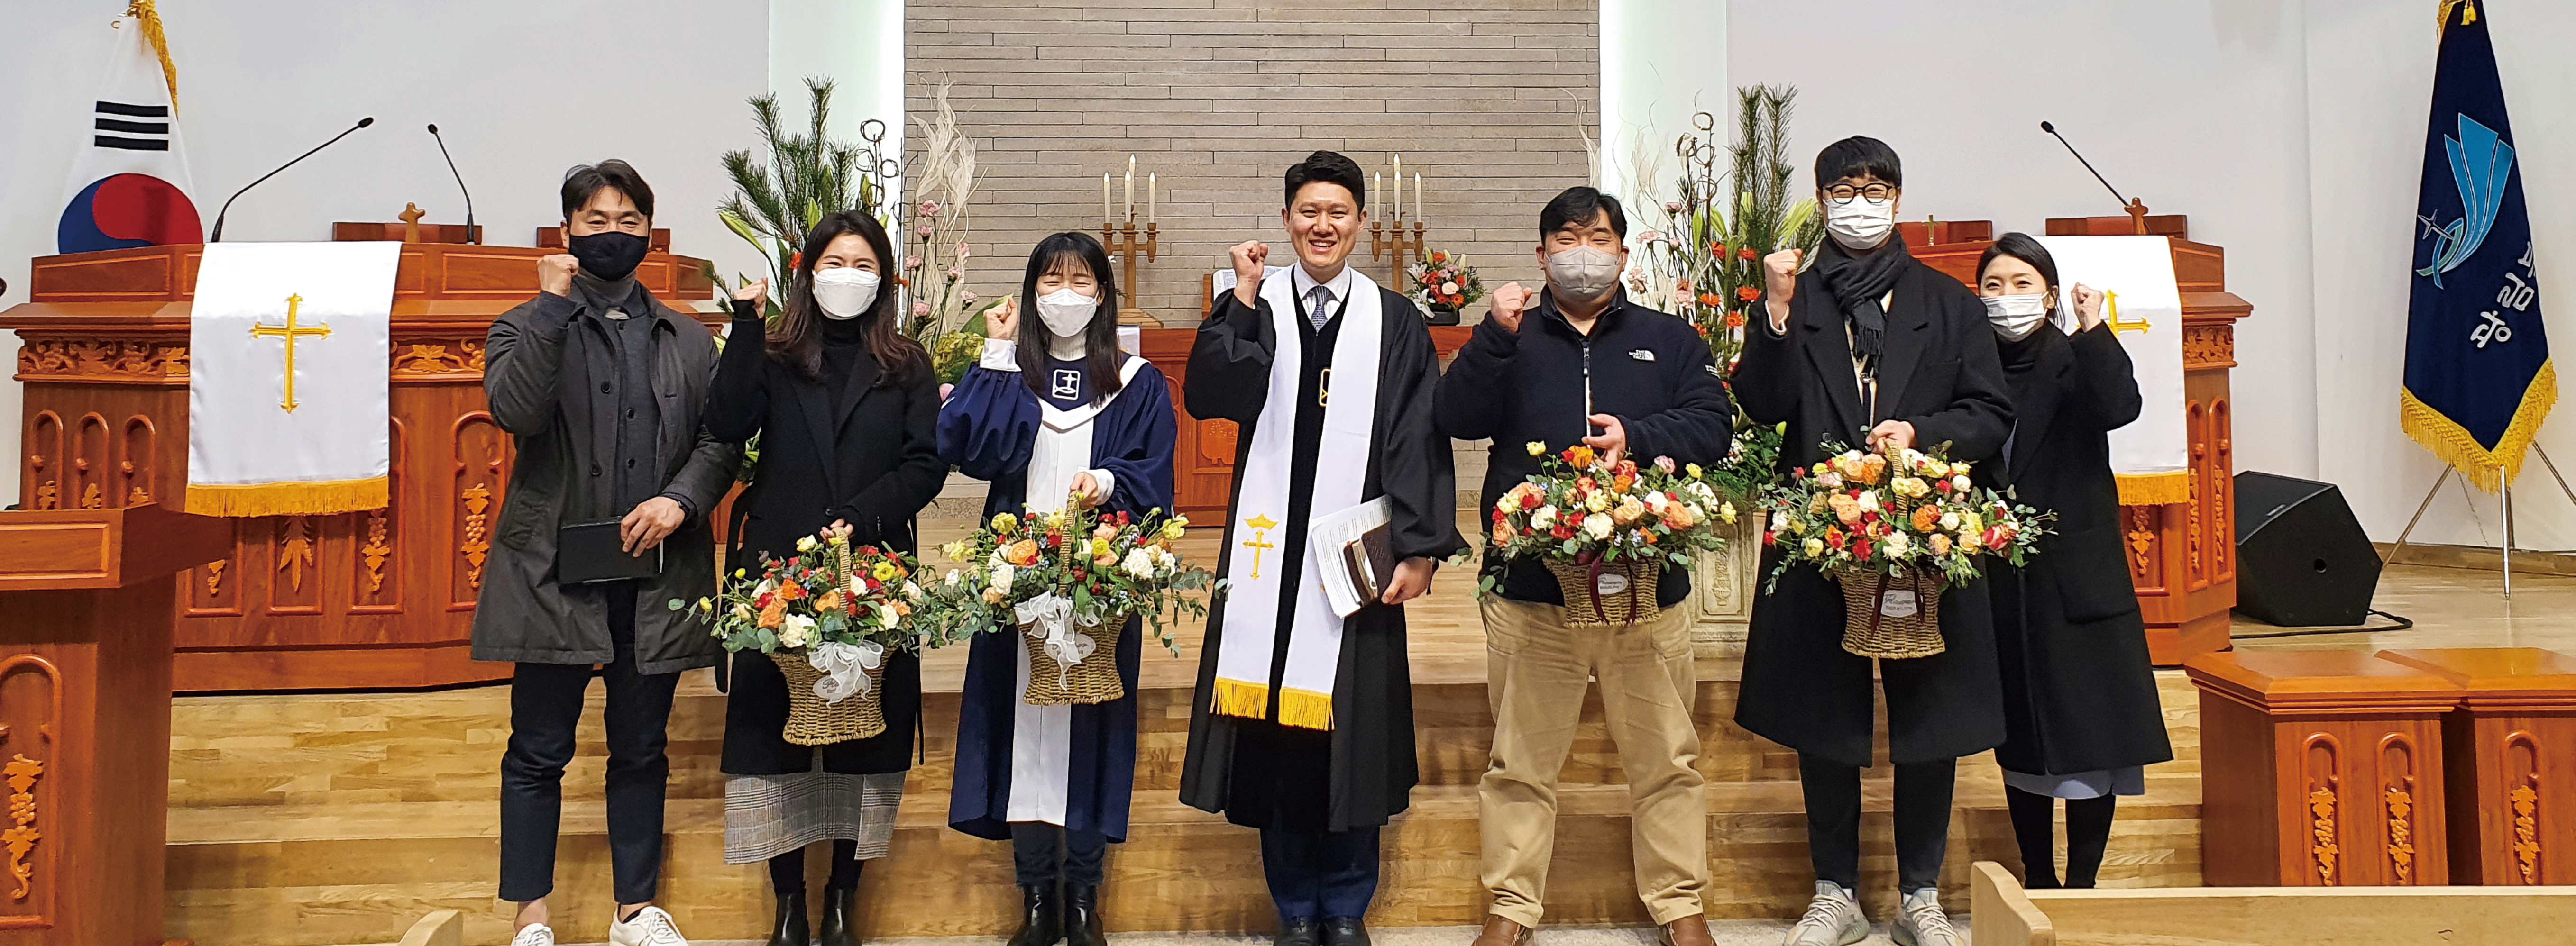 [믿음의 현장] 광림북교회에 세워진 일곱 명의 신천 집사